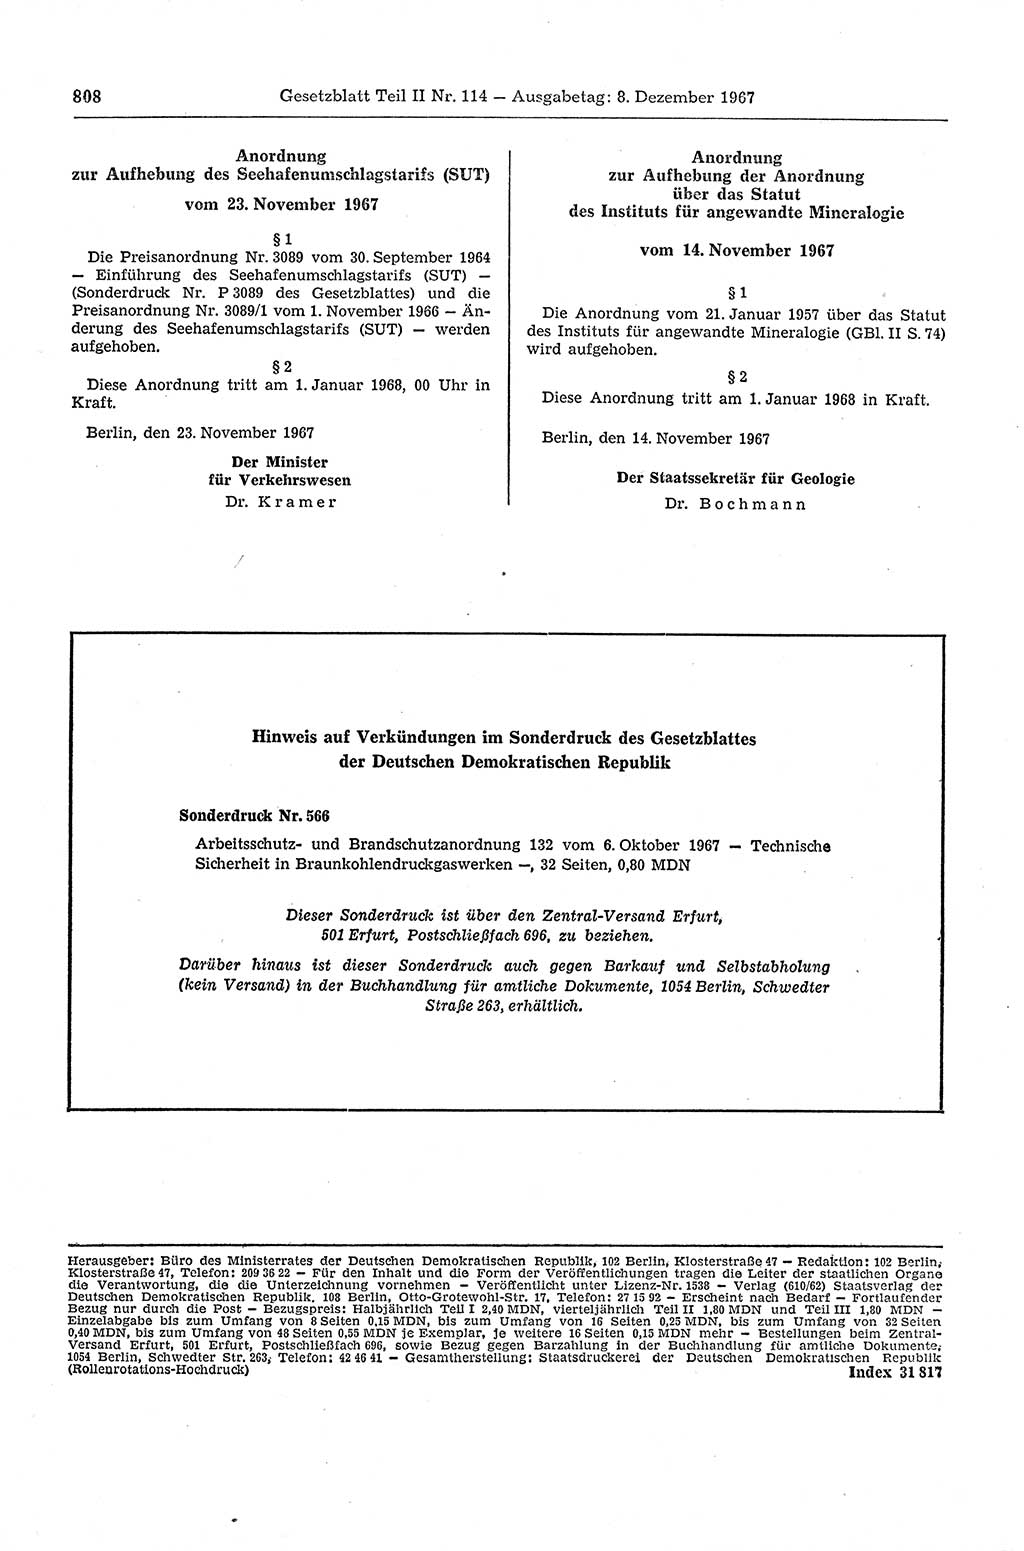 Gesetzblatt (GBl.) der Deutschen Demokratischen Republik (DDR) Teil ⅠⅠ 1967, Seite 808 (GBl. DDR ⅠⅠ 1967, S. 808)